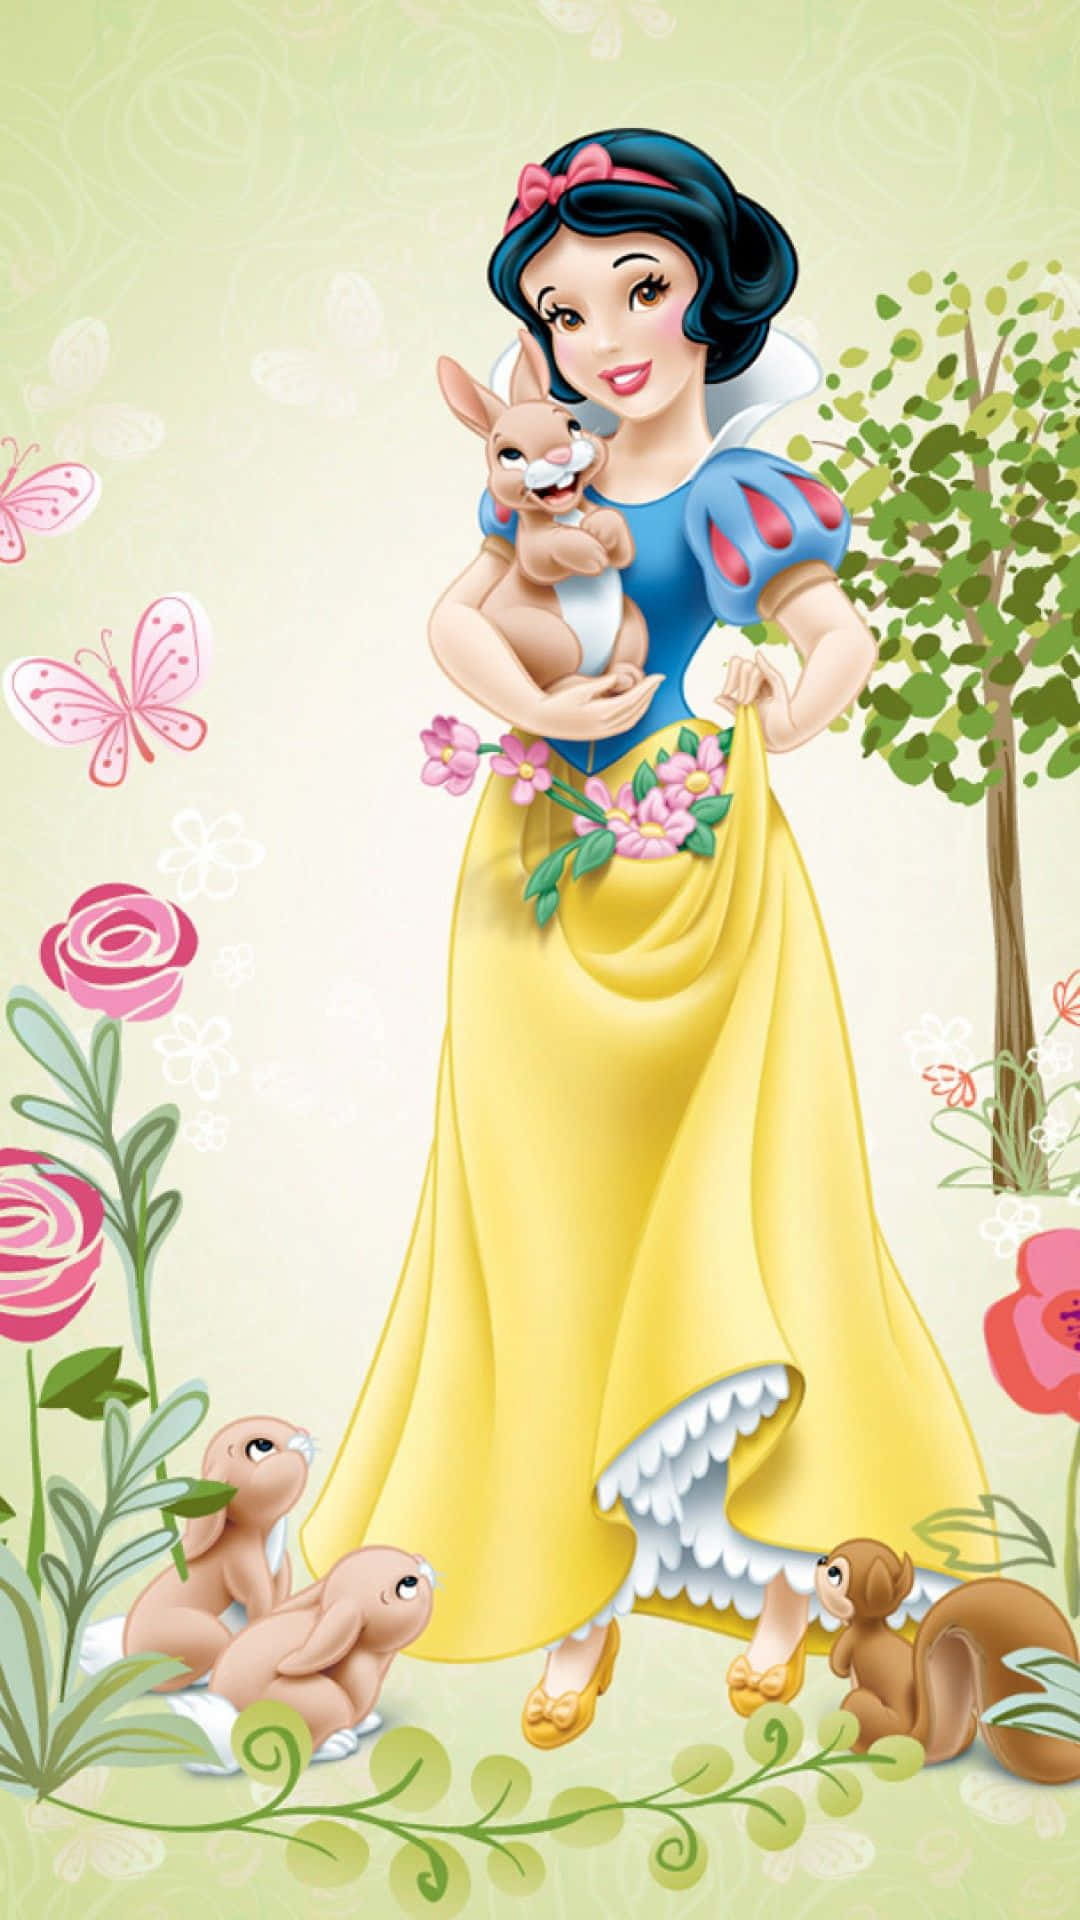 Imagende Las Princesas De Disney - Blancanieves